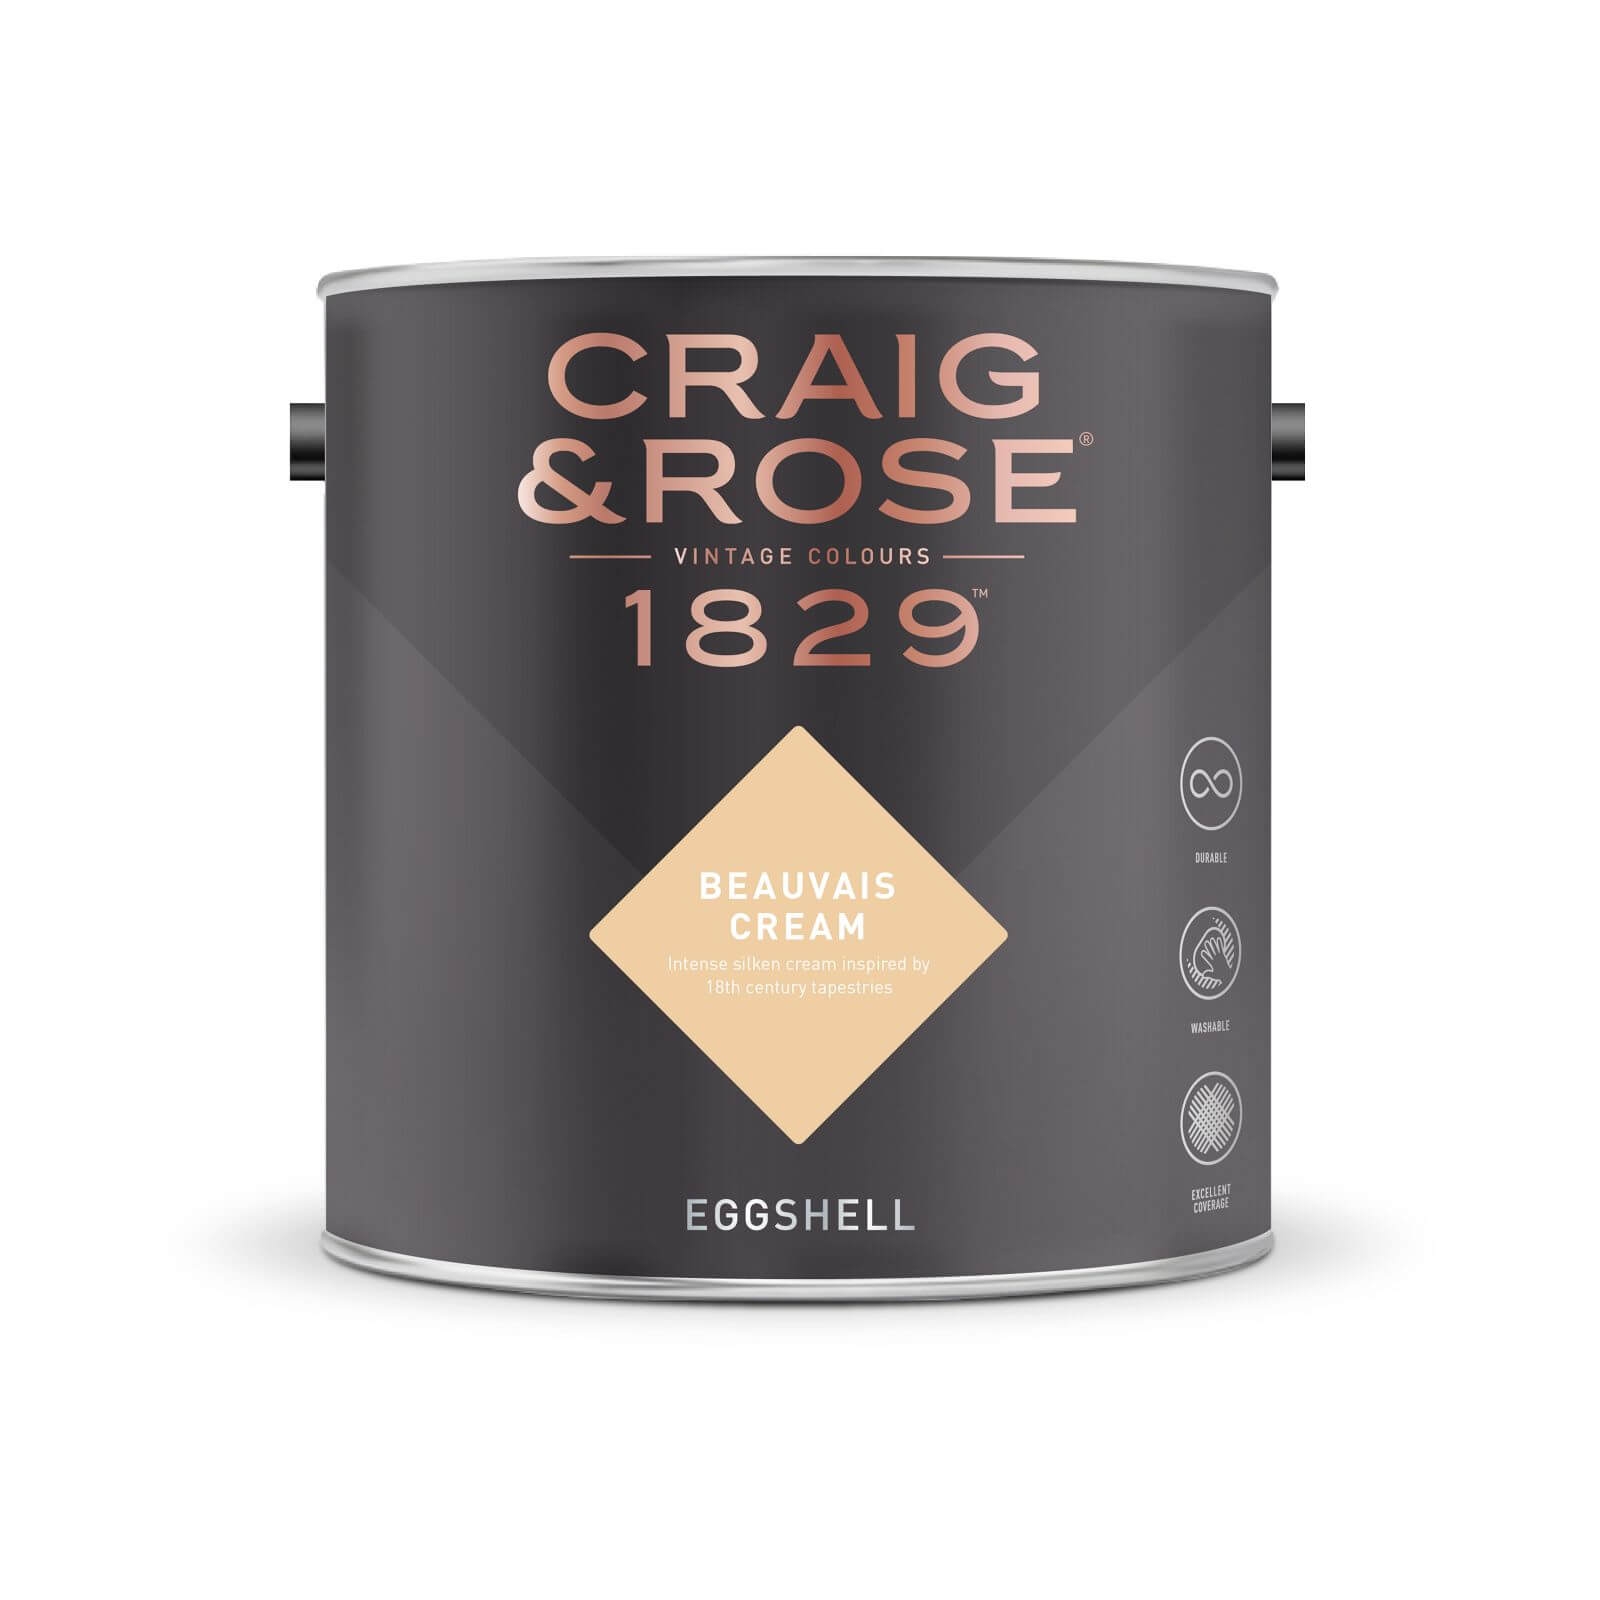 Craig & Rose 1829 Eggshell Paint Beauvais Cream - 2.5L